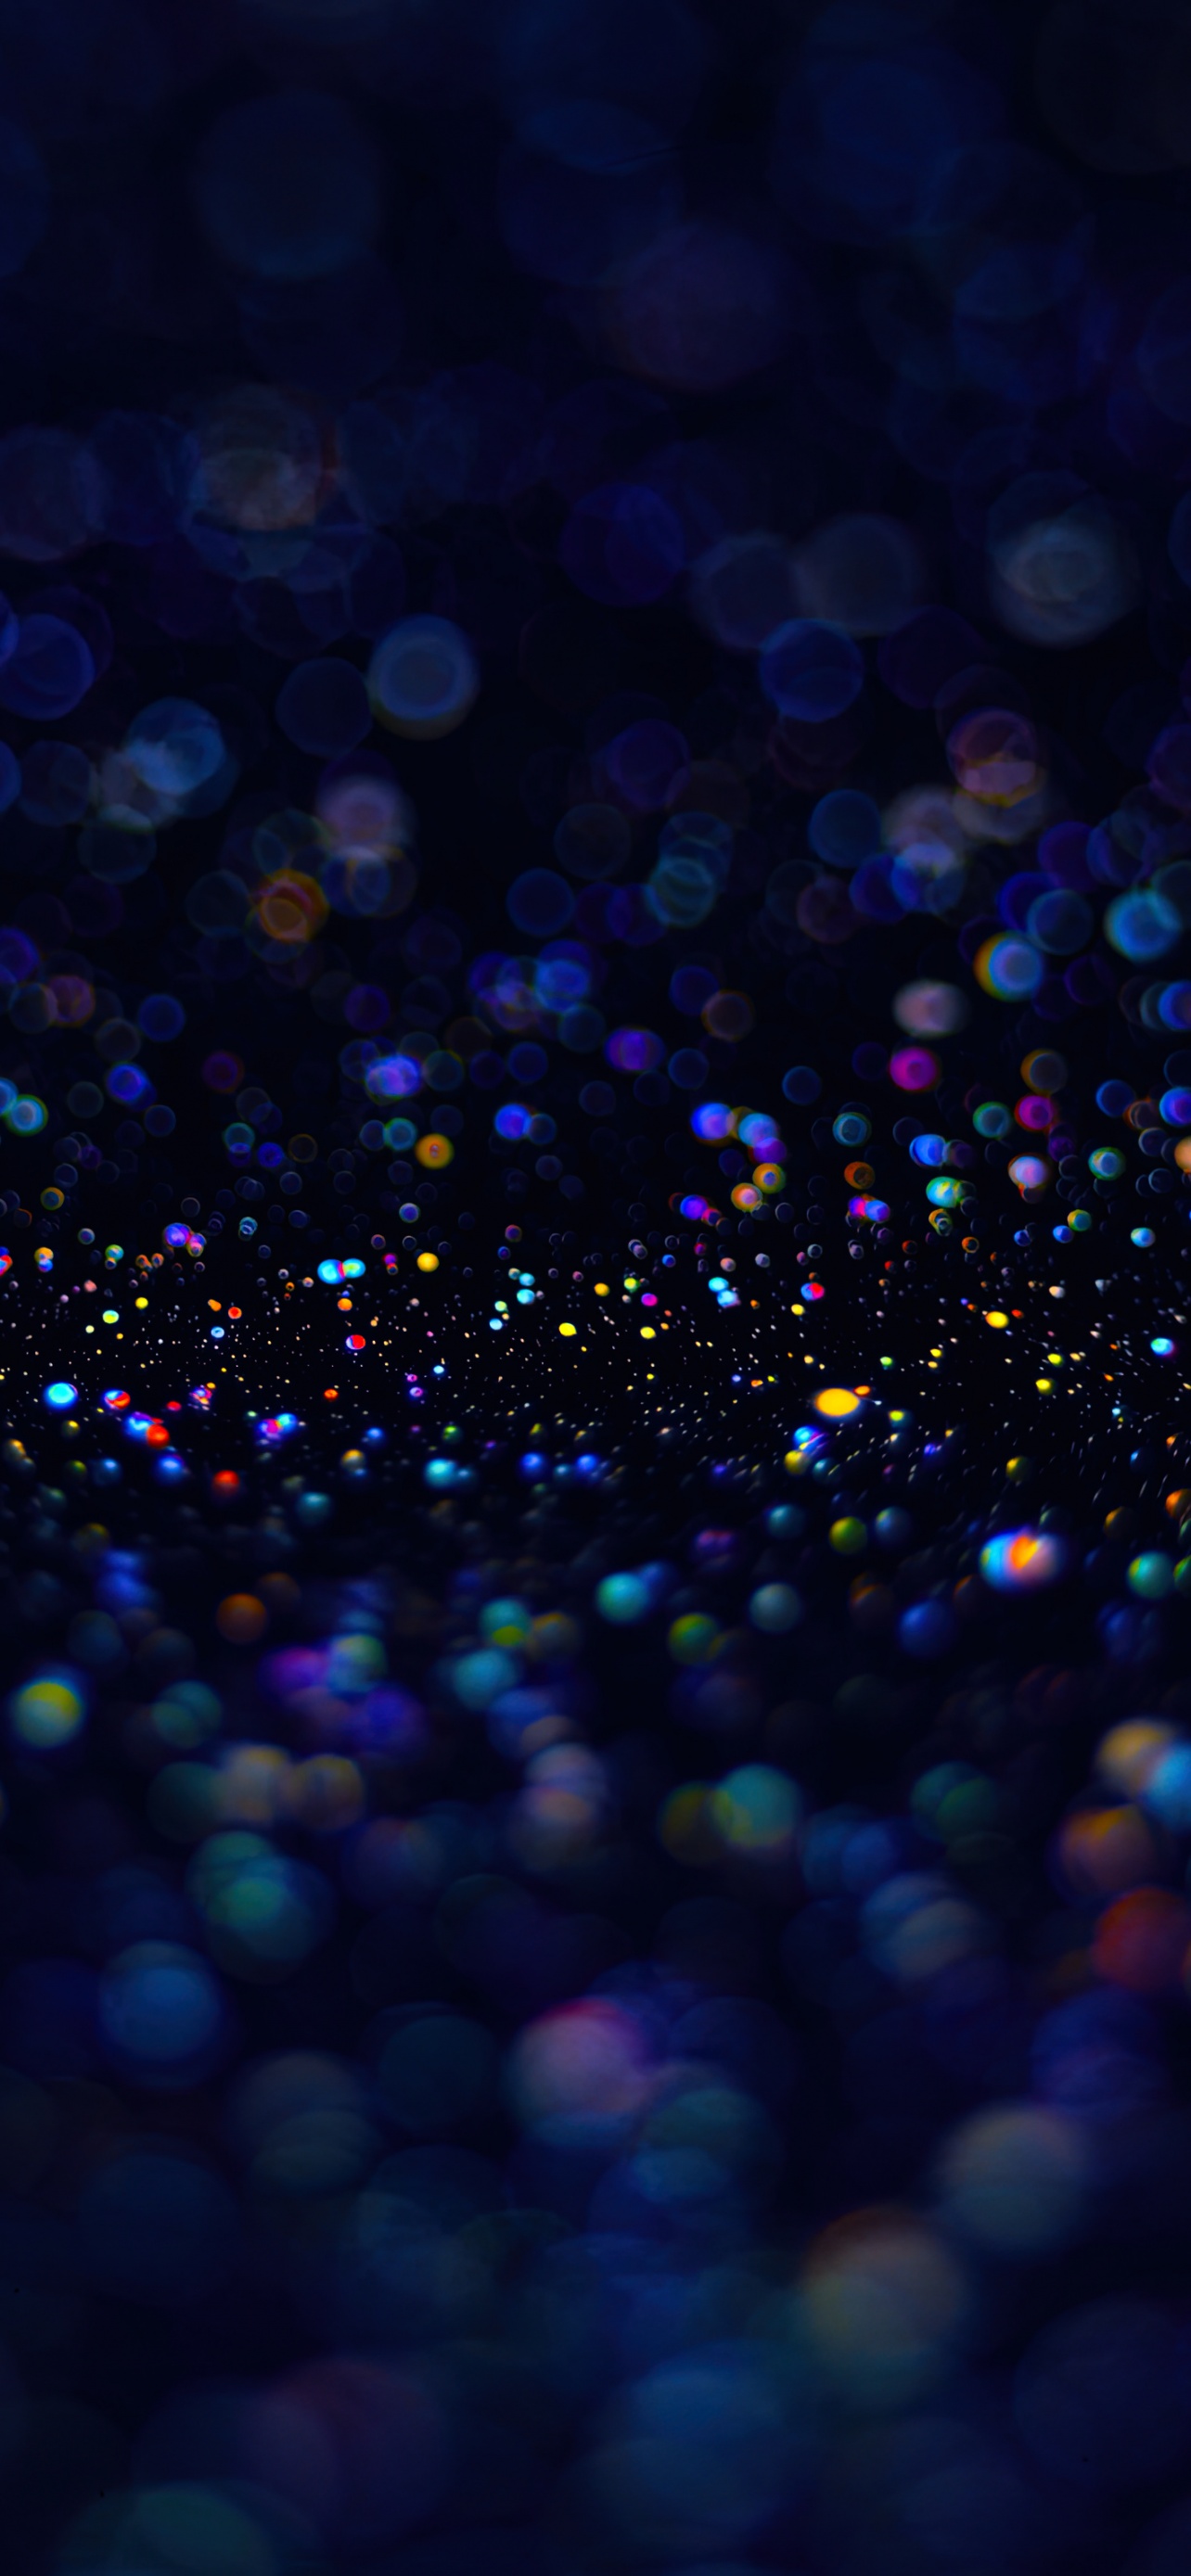 Hình nền bong bóng xà phòng 4K tạo ra một không gian mơ màng và đầy màu sắc cho thiết bị của bạn. Mỗi chiếc bong bóng đều có màu sắc và hình dạng riêng biệt. Tận hưởng một ngày ở khu vực xà phòng này cùng với hình nền bong bóng 4K đầy sáng tạo, bạn chắc chắn sẽ không bao giờ quên được trải nghiệm này.